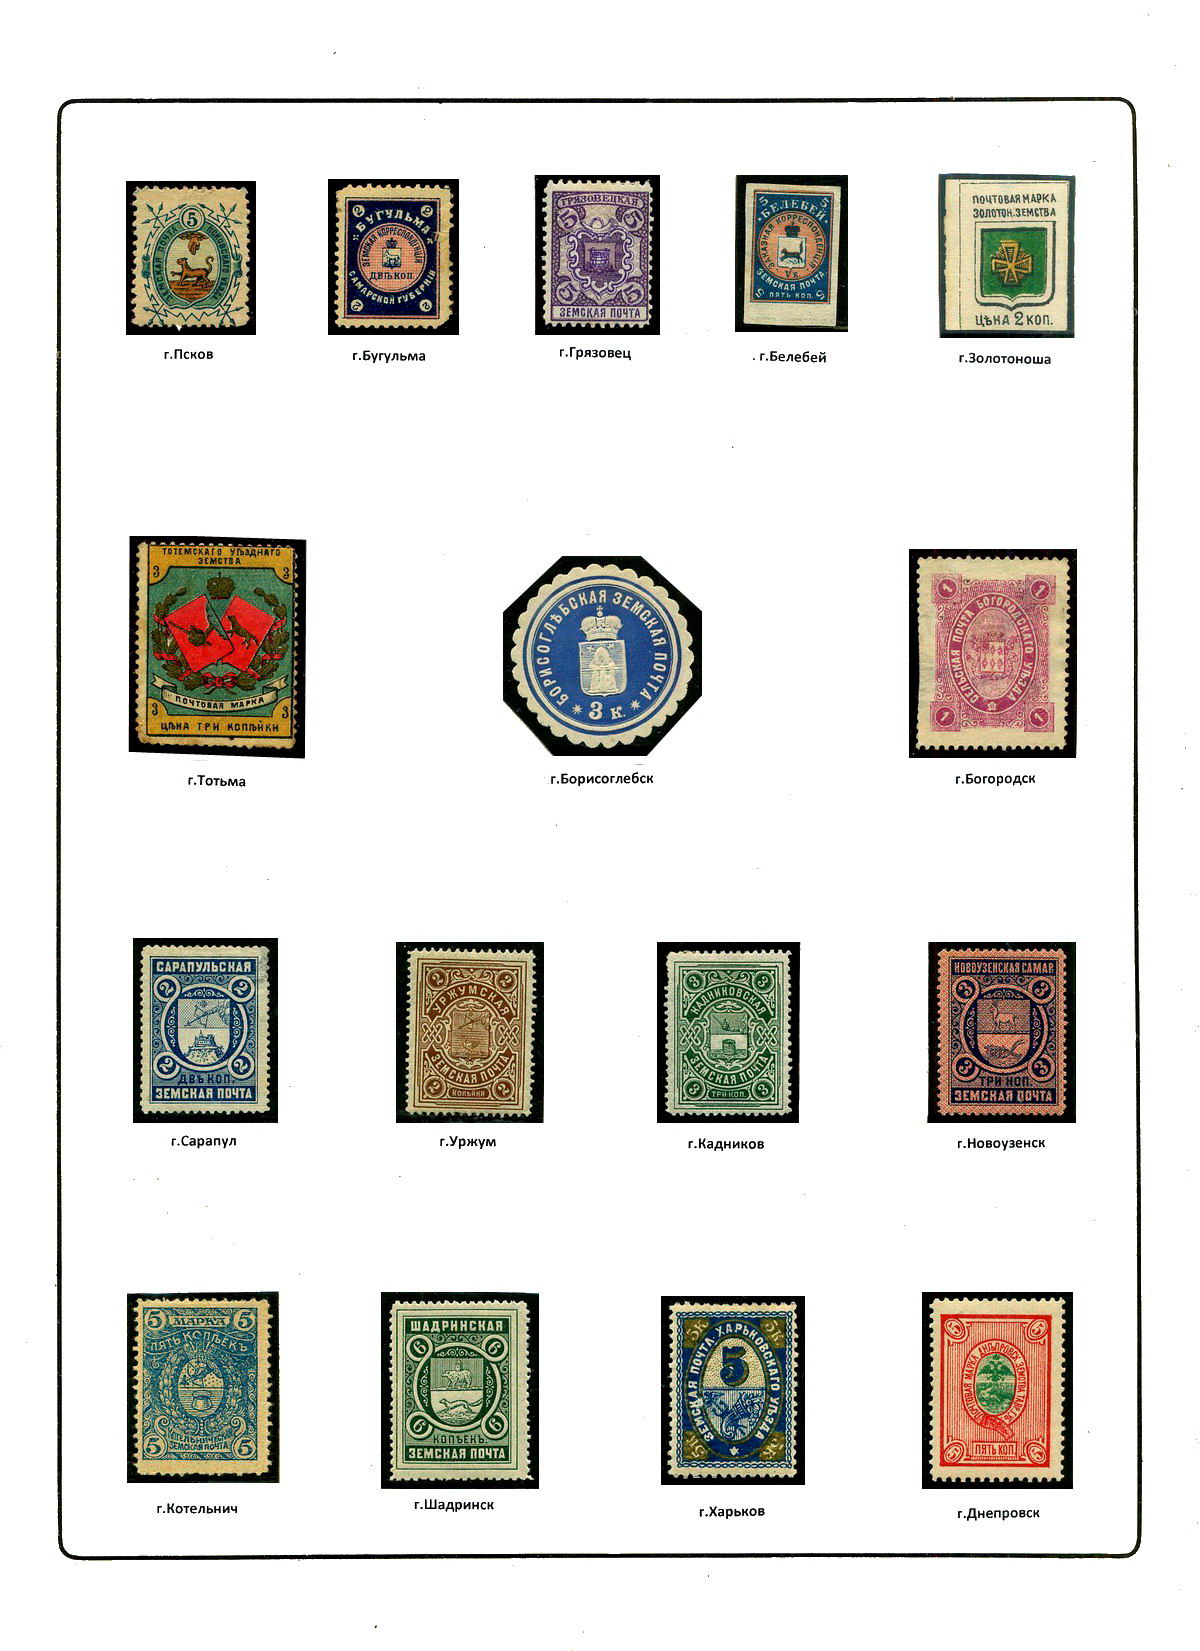 Гербы стран и городов на почтовых марках Фландрия Лимбург Айно Геральдика в филателии